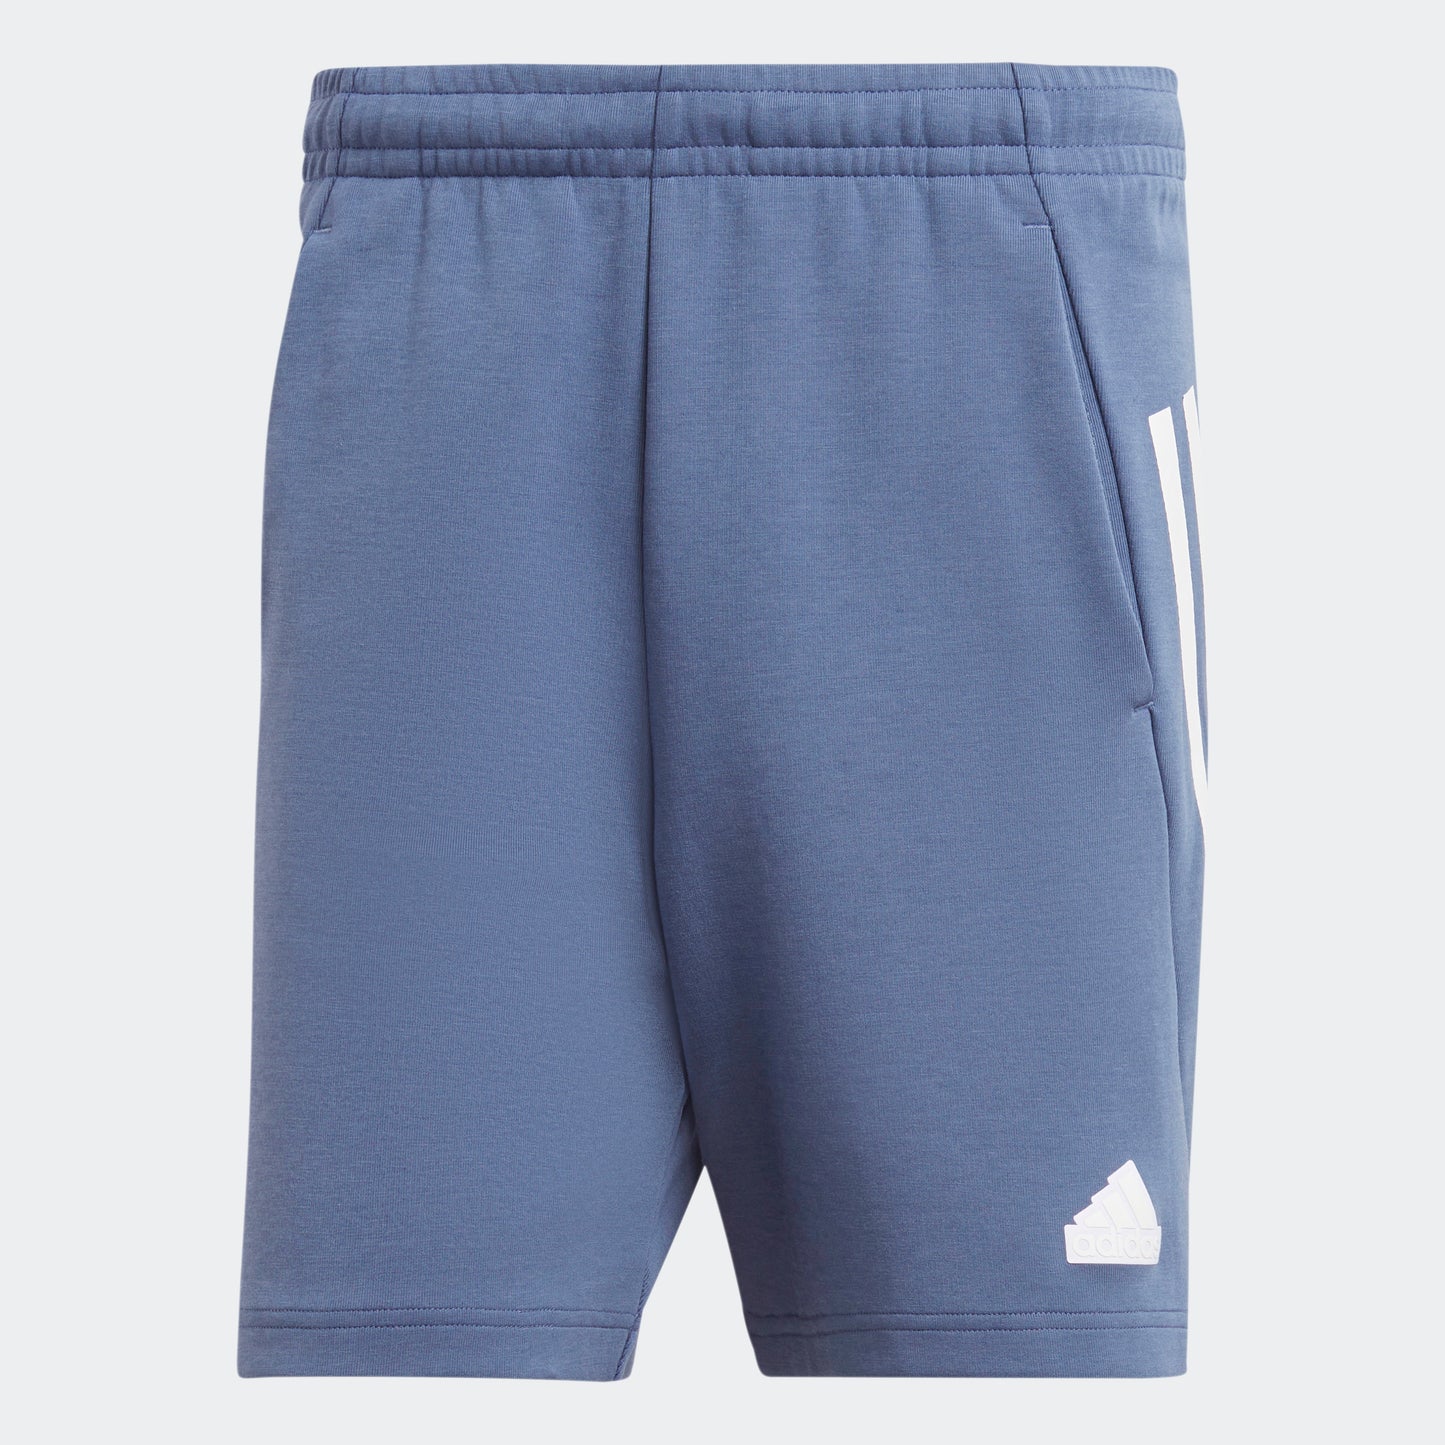 מכנסיים קצרים לגברים FUTURE ICONS 3-STRIPES בצבע כחול ולבן